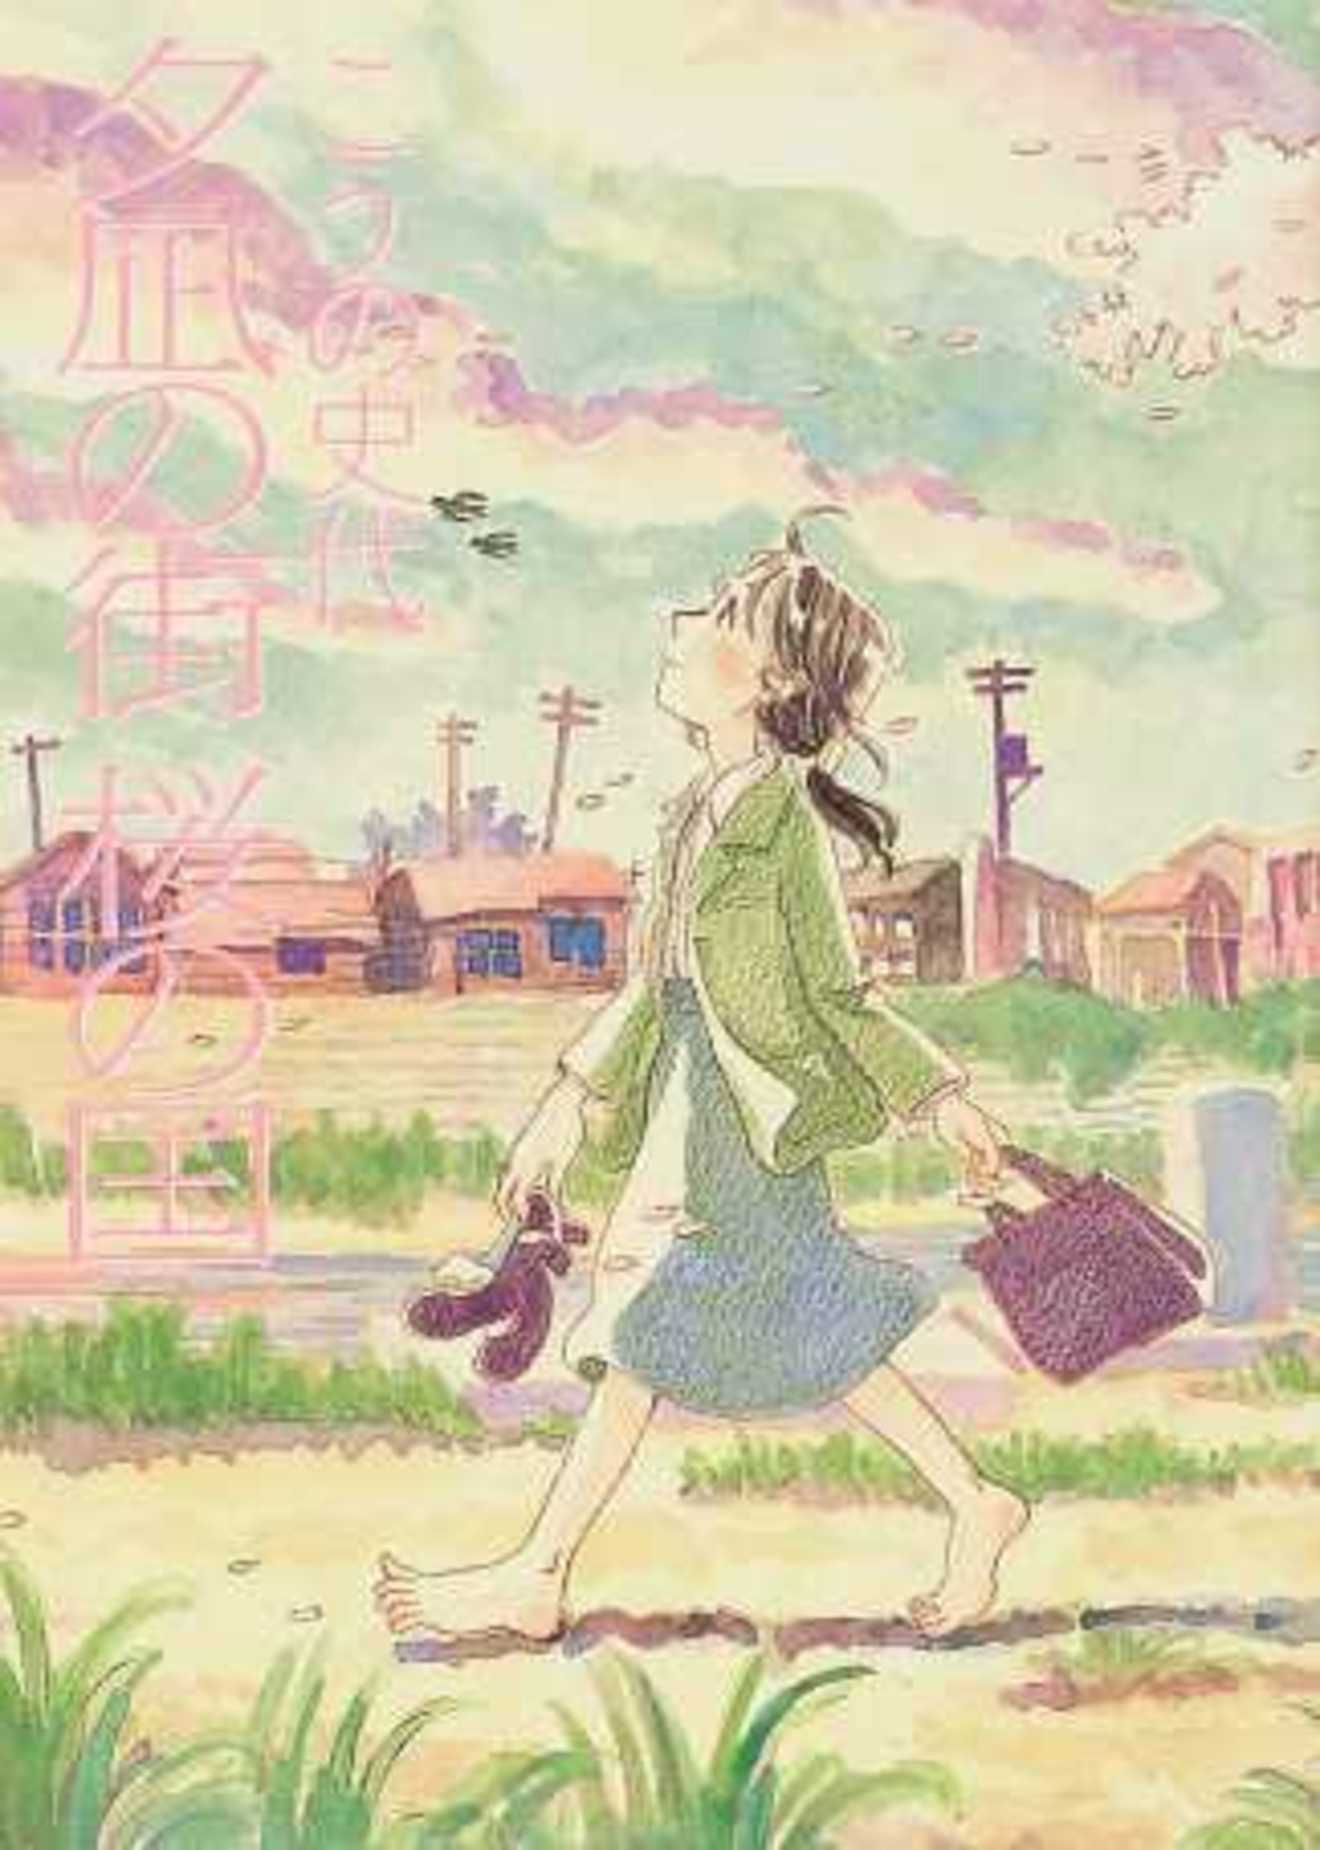 漫画 夕凪の街 桜の国 の優しく もの悲しい魅力を全巻ネタバレ紹介 漫画も ホンシェルジュ